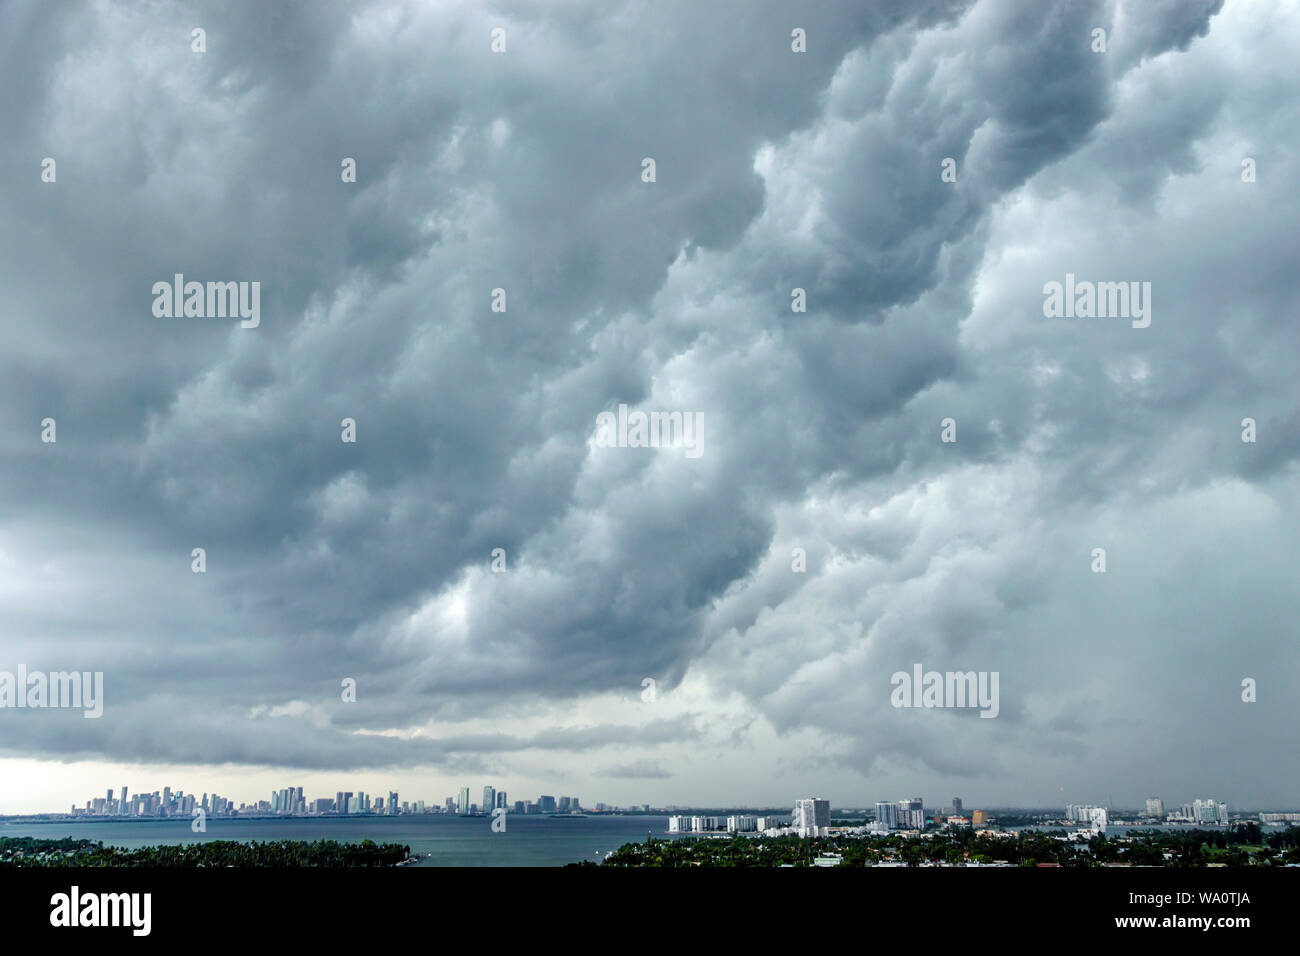 Miami Beach Florida, Skyline der Stadt, Wolken, Wetterhimmel, Gewitterwolken, Regenwolken, FL190731027 Stockfoto